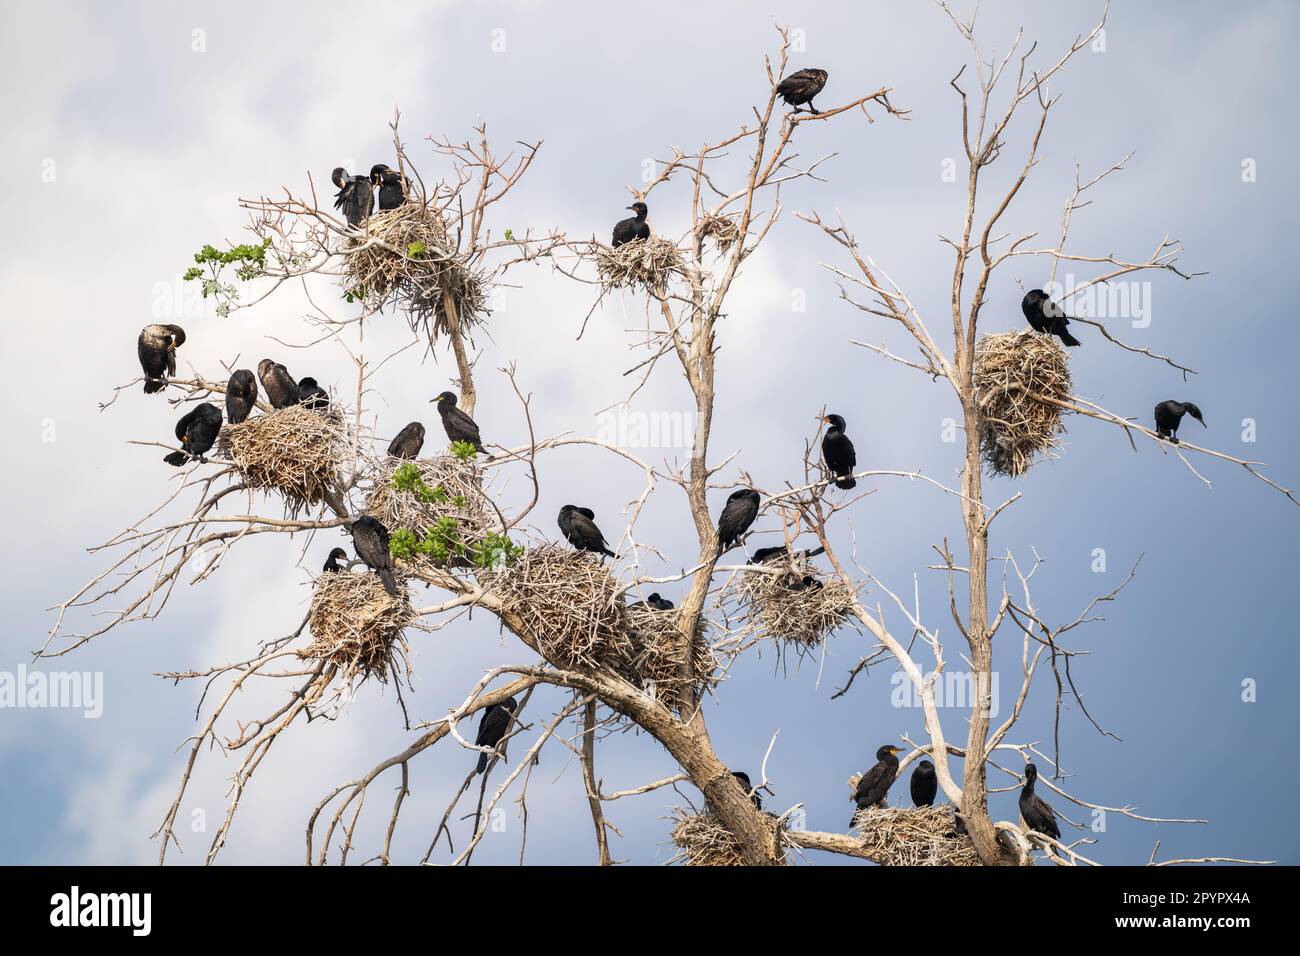 Uccelli cormorani a doppia cresta che nidificano in un alto serpente, o albero morto, con nidi sparsi in tutto contro un cielo azzurro con nuvole. Foto Stock